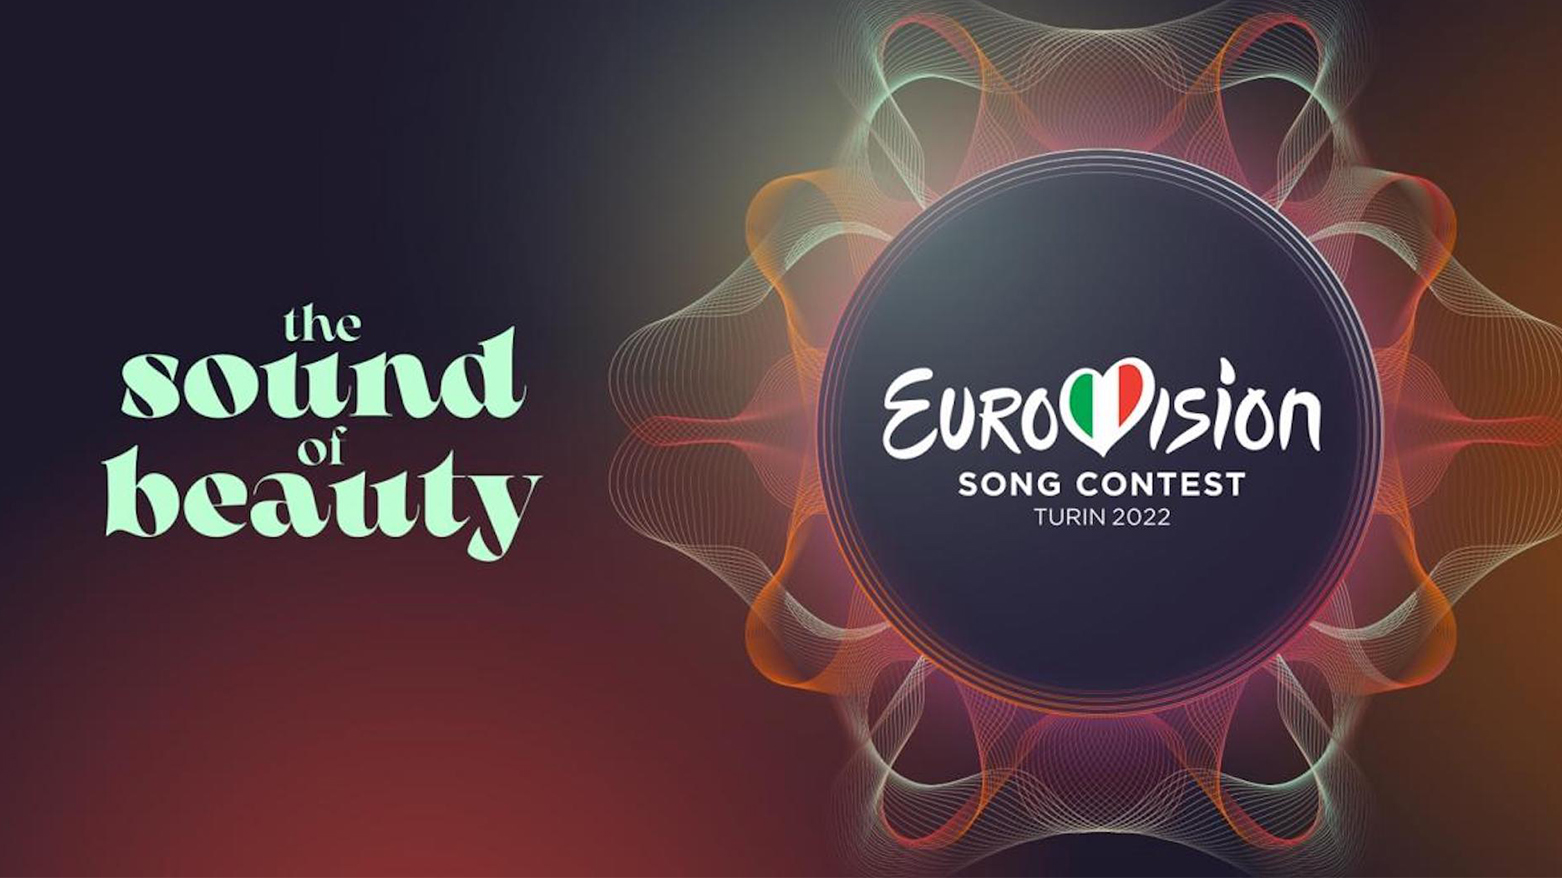 لوگو مسابقه آواز یوروویژن که قرار است امسال در ایتالیا برگزار شود